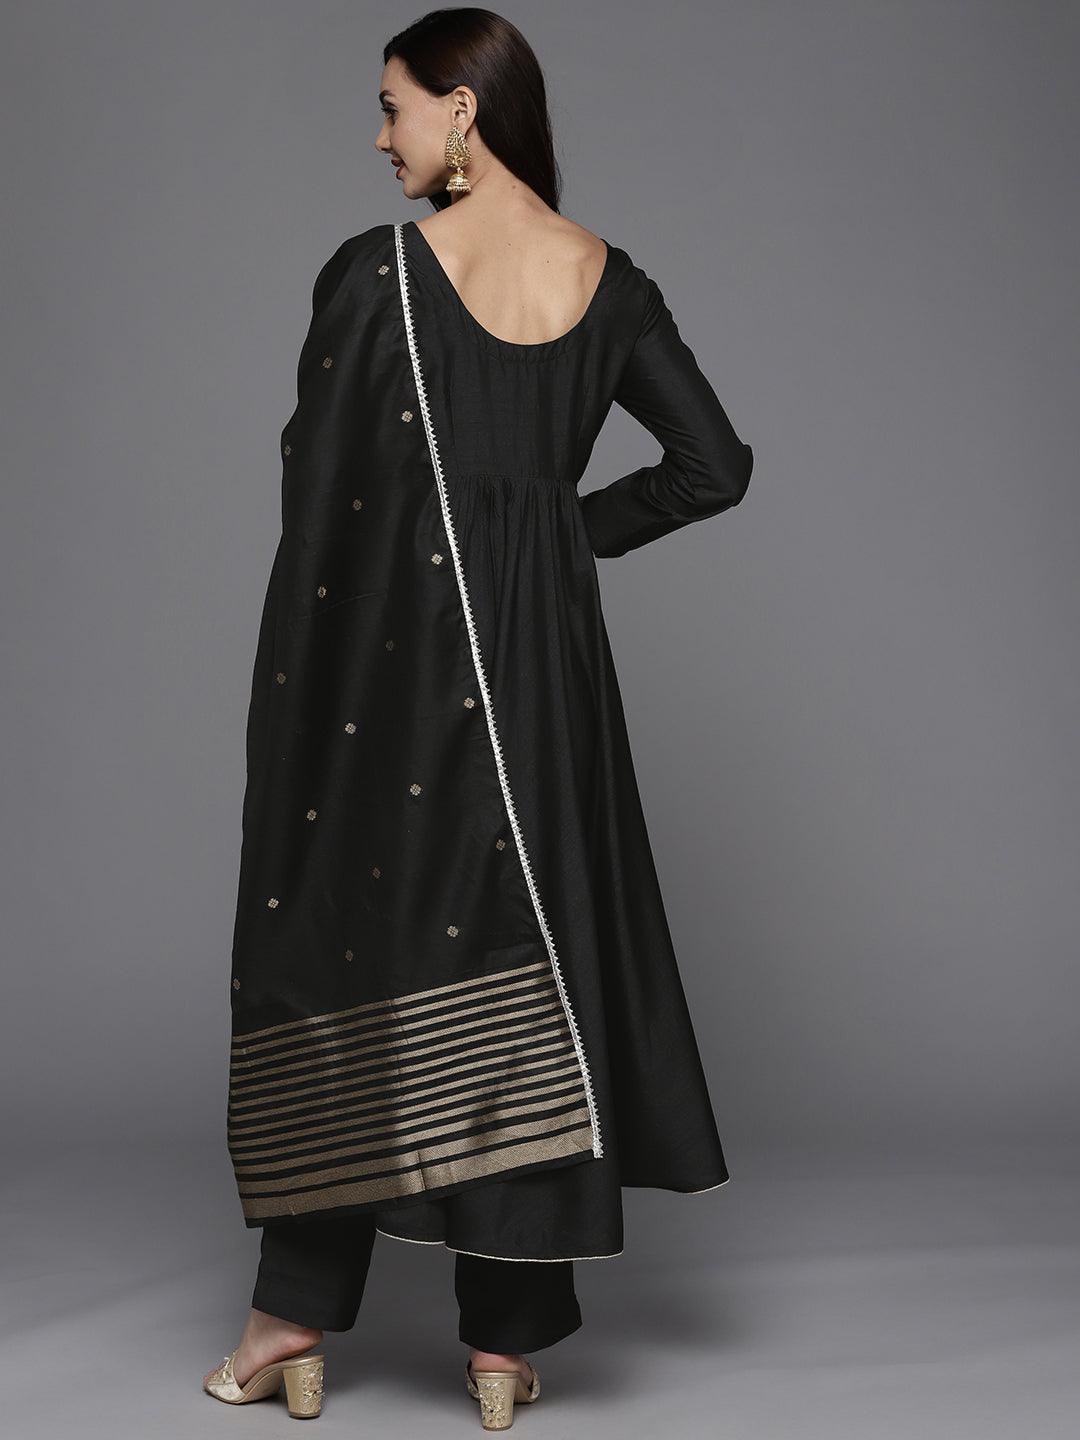 Solid Black Silk Blend Suit Set - DWEEP SARA